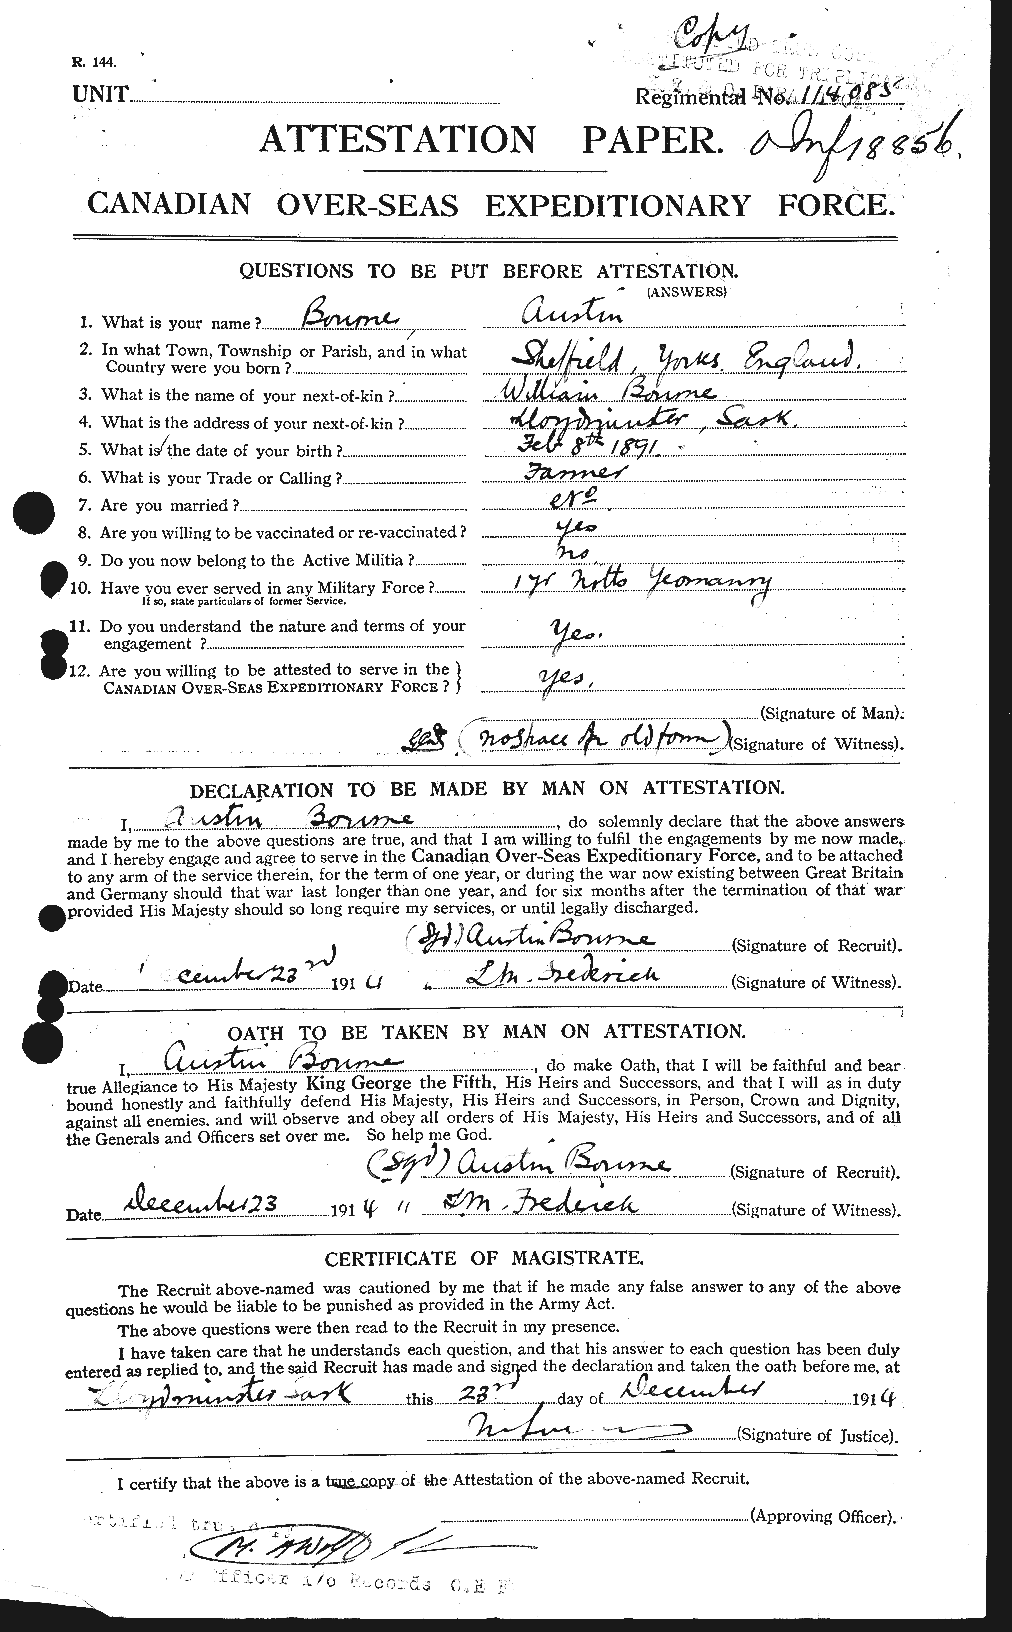 Dossiers du Personnel de la Première Guerre mondiale - CEC 254099a